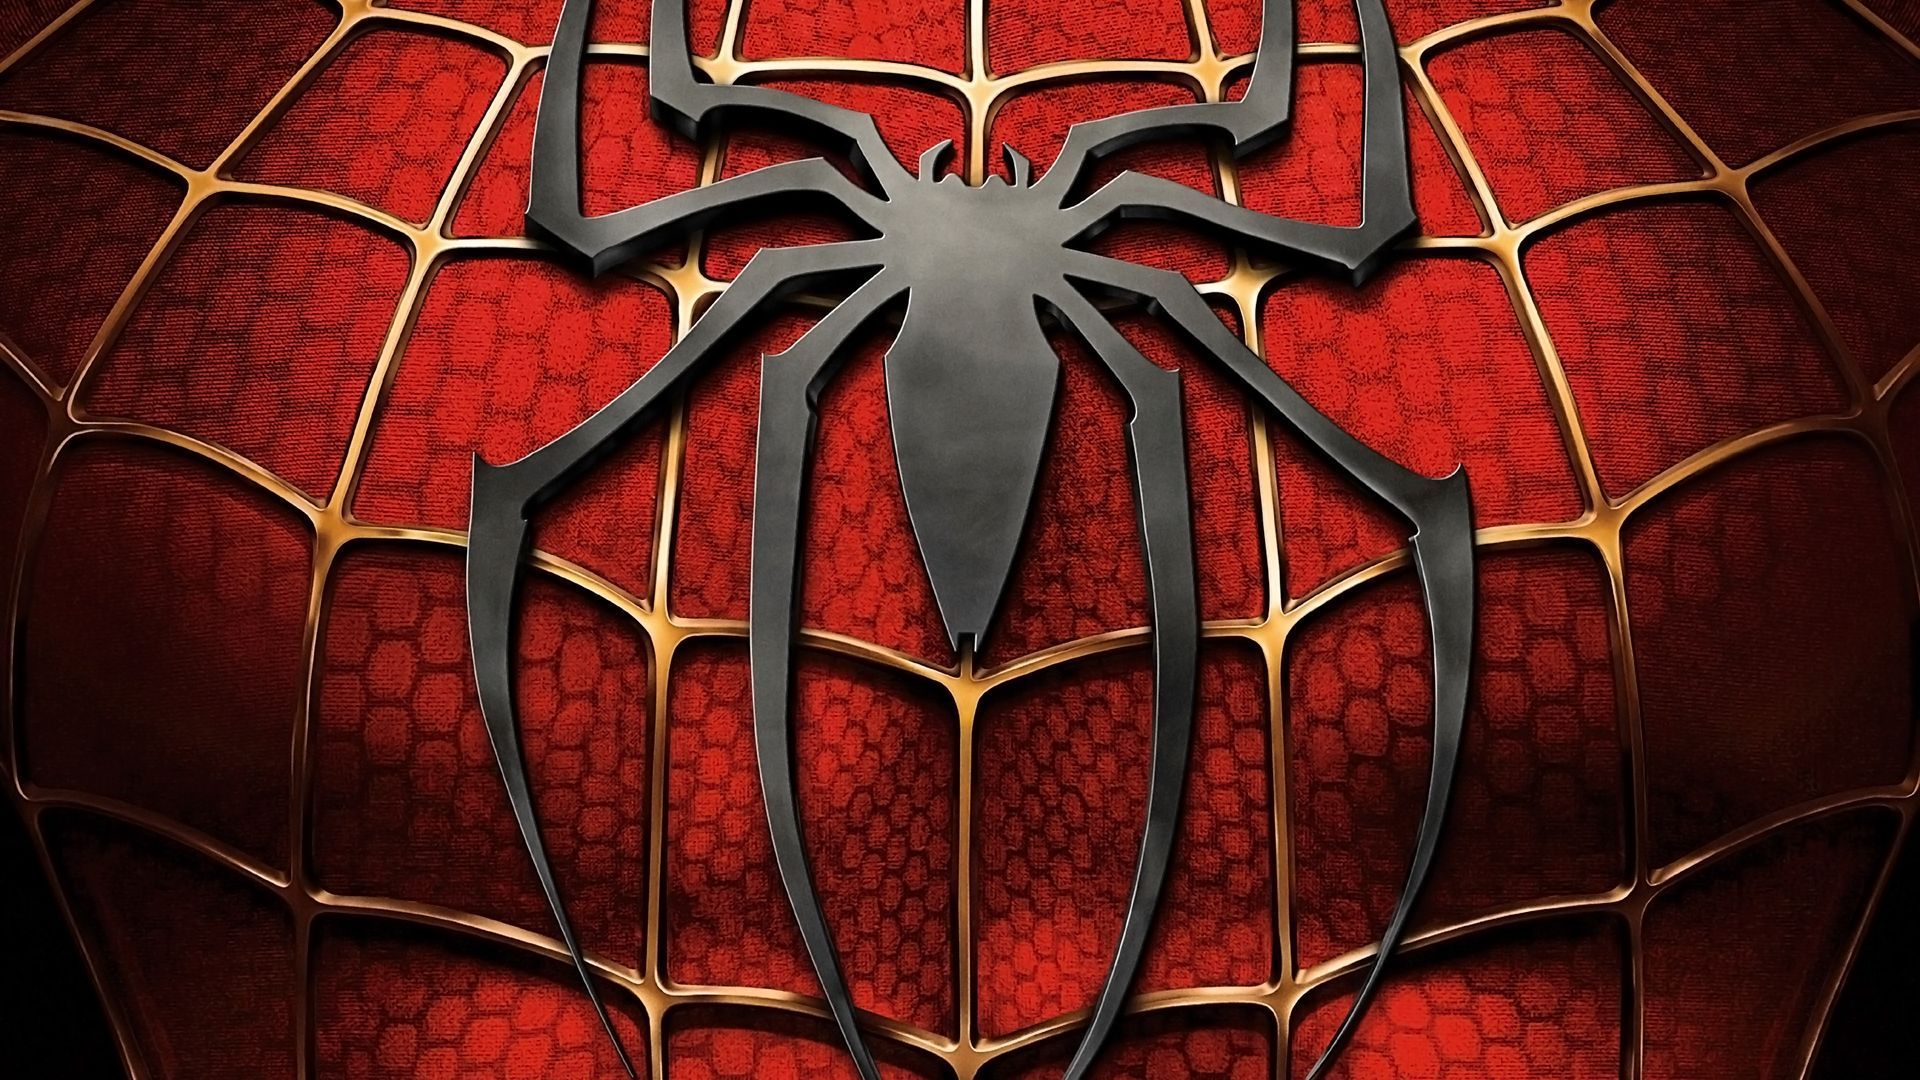 spiderman wallpaper hd,rot,spider man,erfundener charakter,symmetrie,glasmalerei